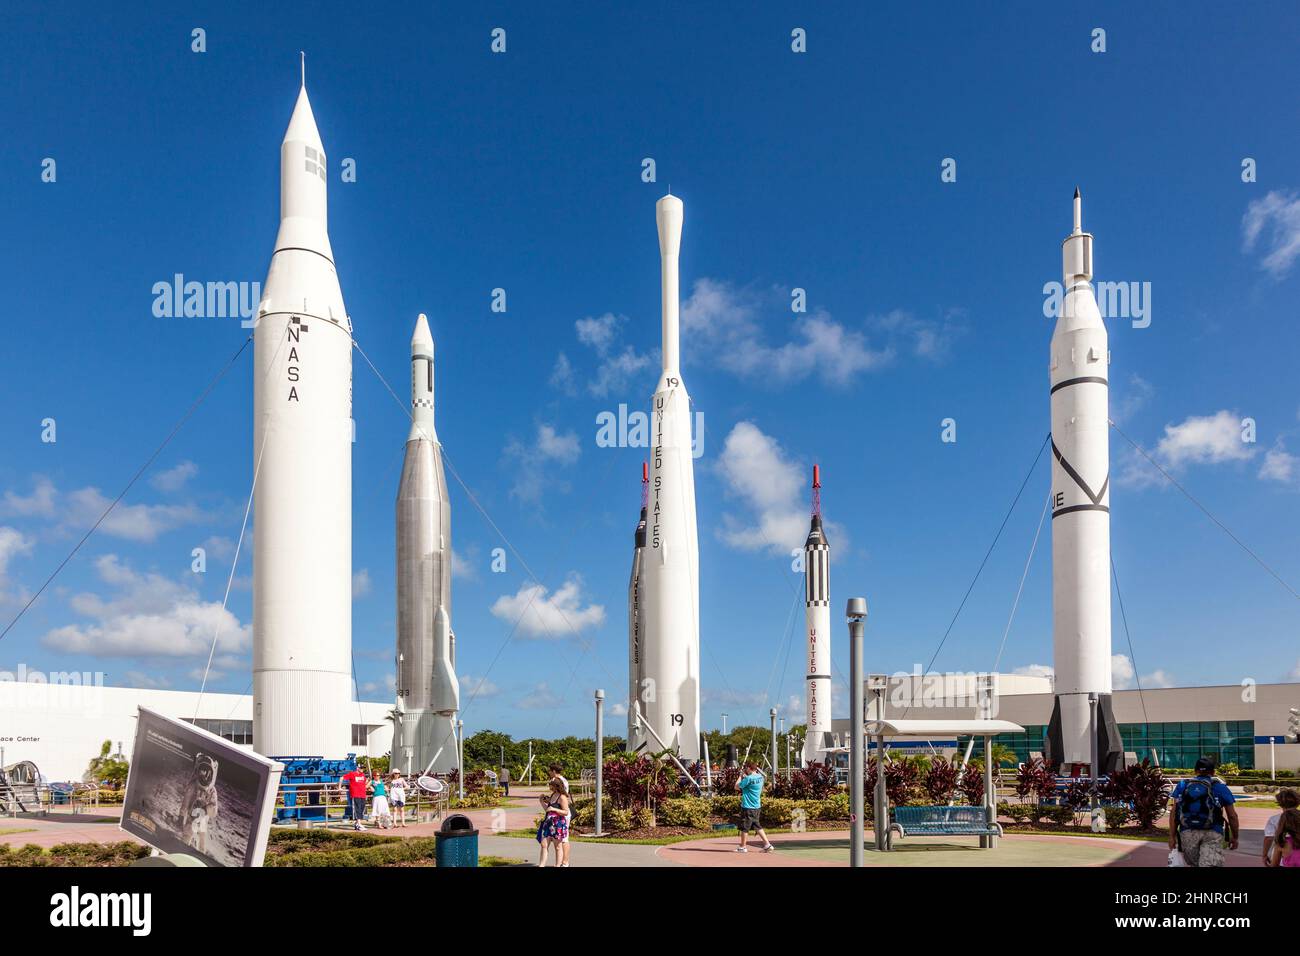 Der Rocket Garden im Kennedy Space Center verfügt über 8 authentische Raketen aus vergangenen Weltraumforschungen Stockfoto